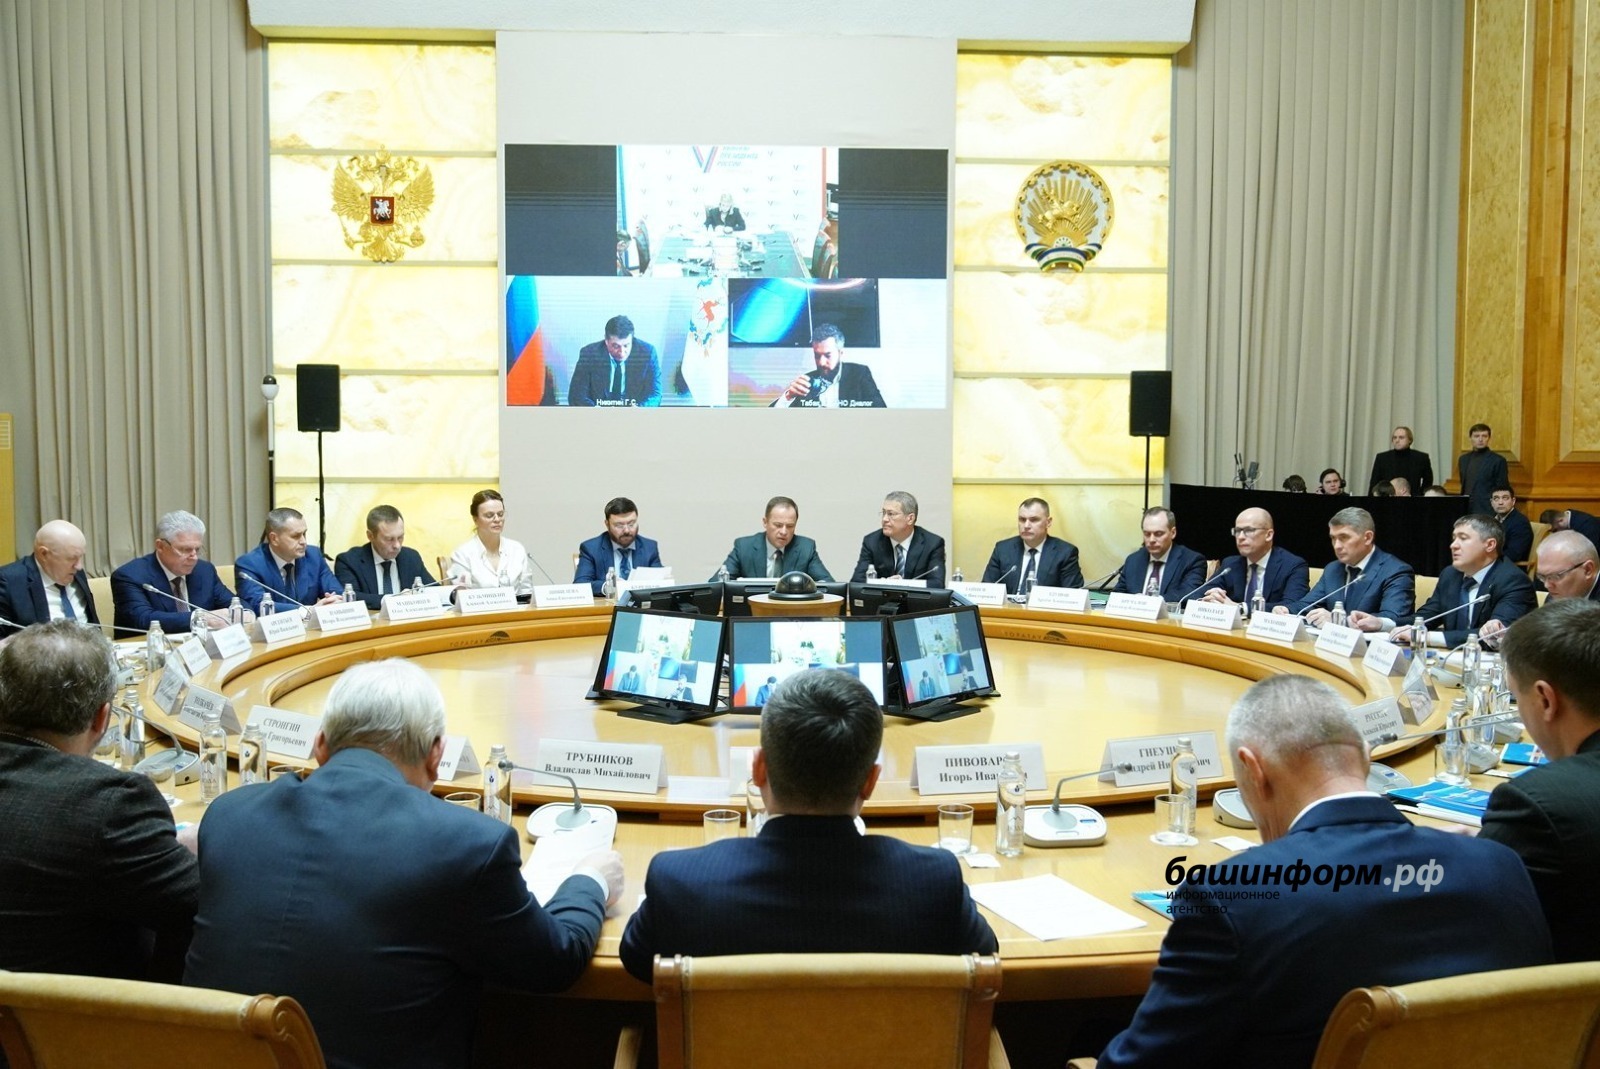 Глава Башкирии сказал, что доверие людей – важнейший показатель открытости власти